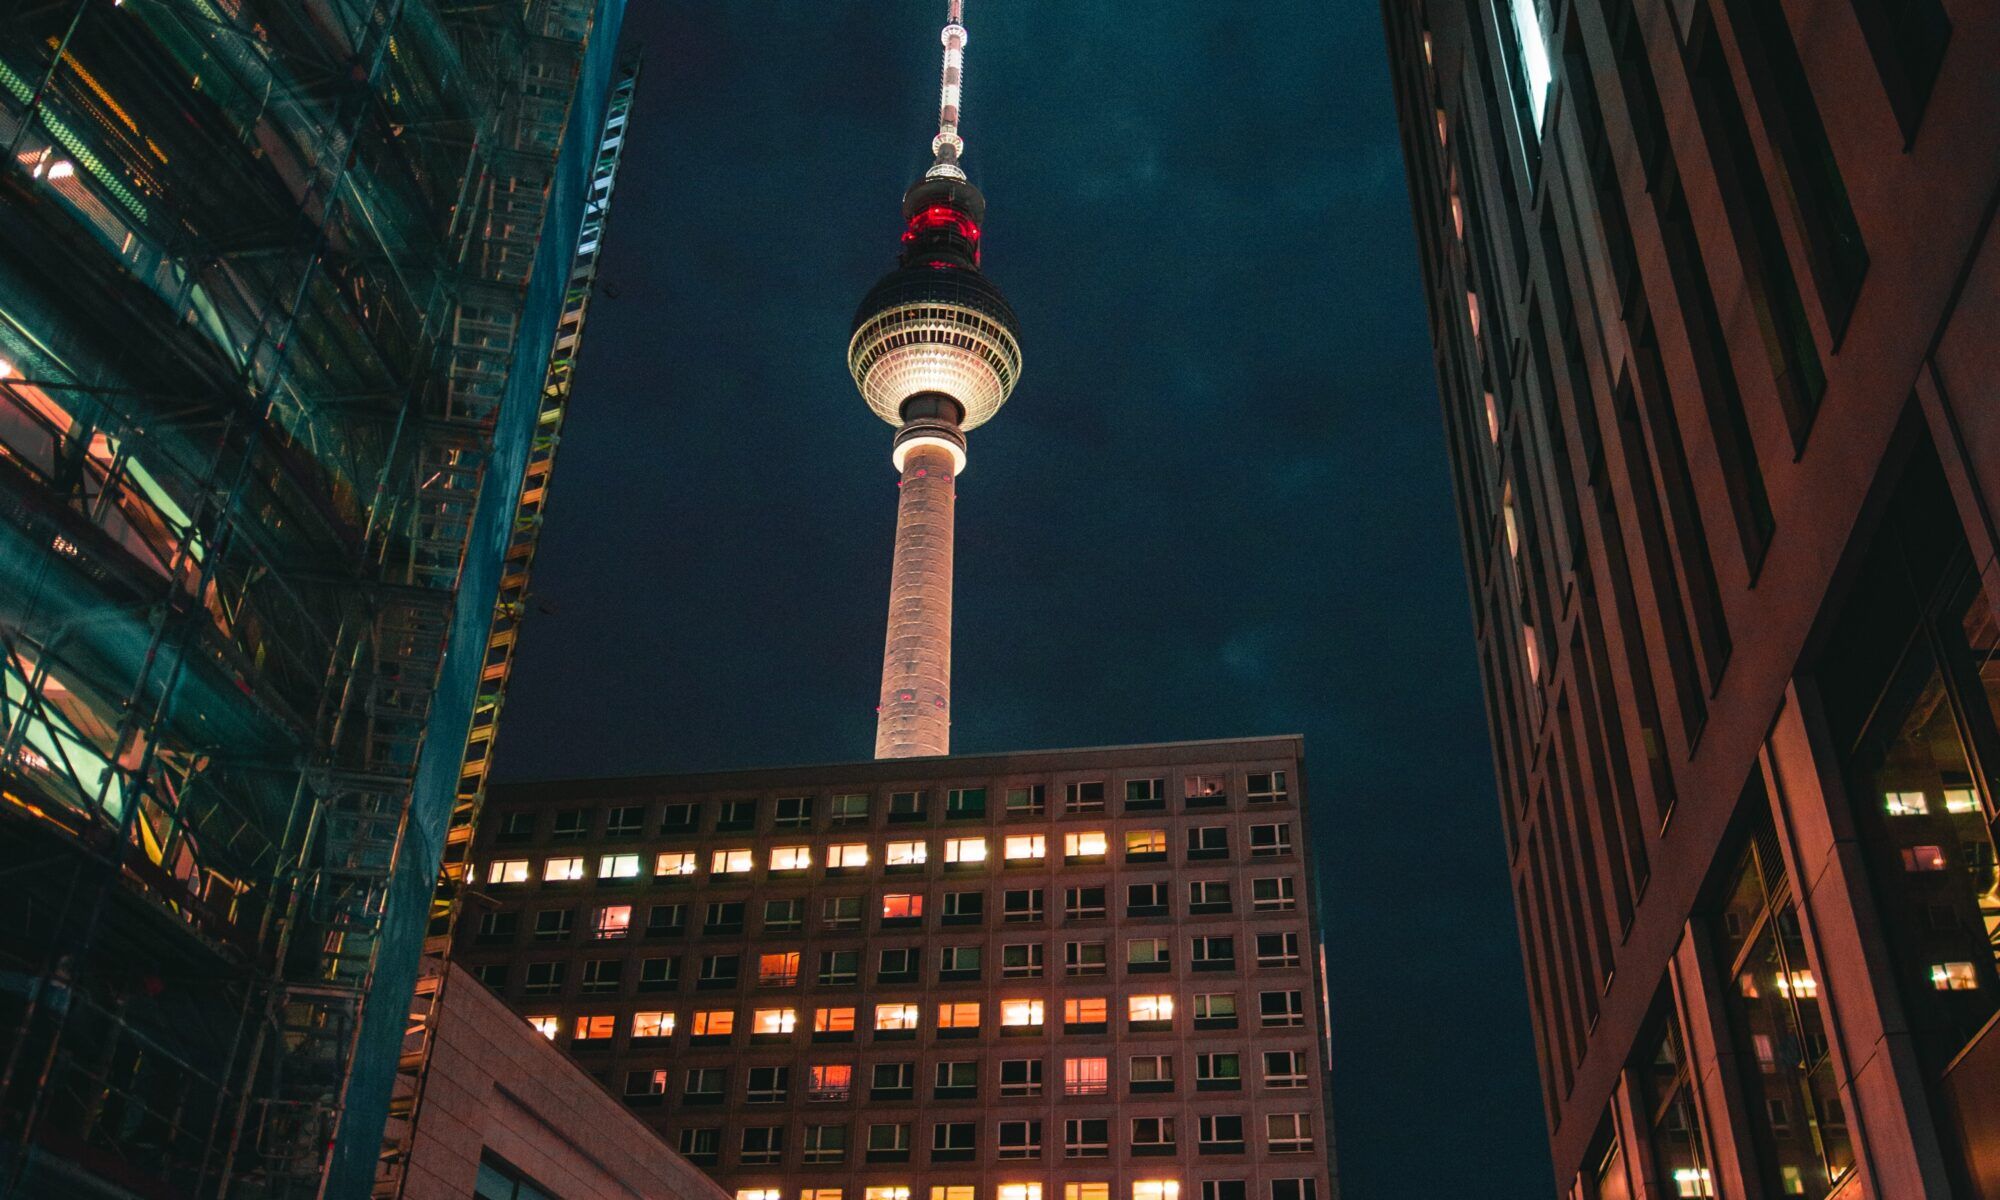 Berlin jenseits des Gewöhnlichen: Wo Sie übernachten und was Sie in der Hauptstadt erleben sollten